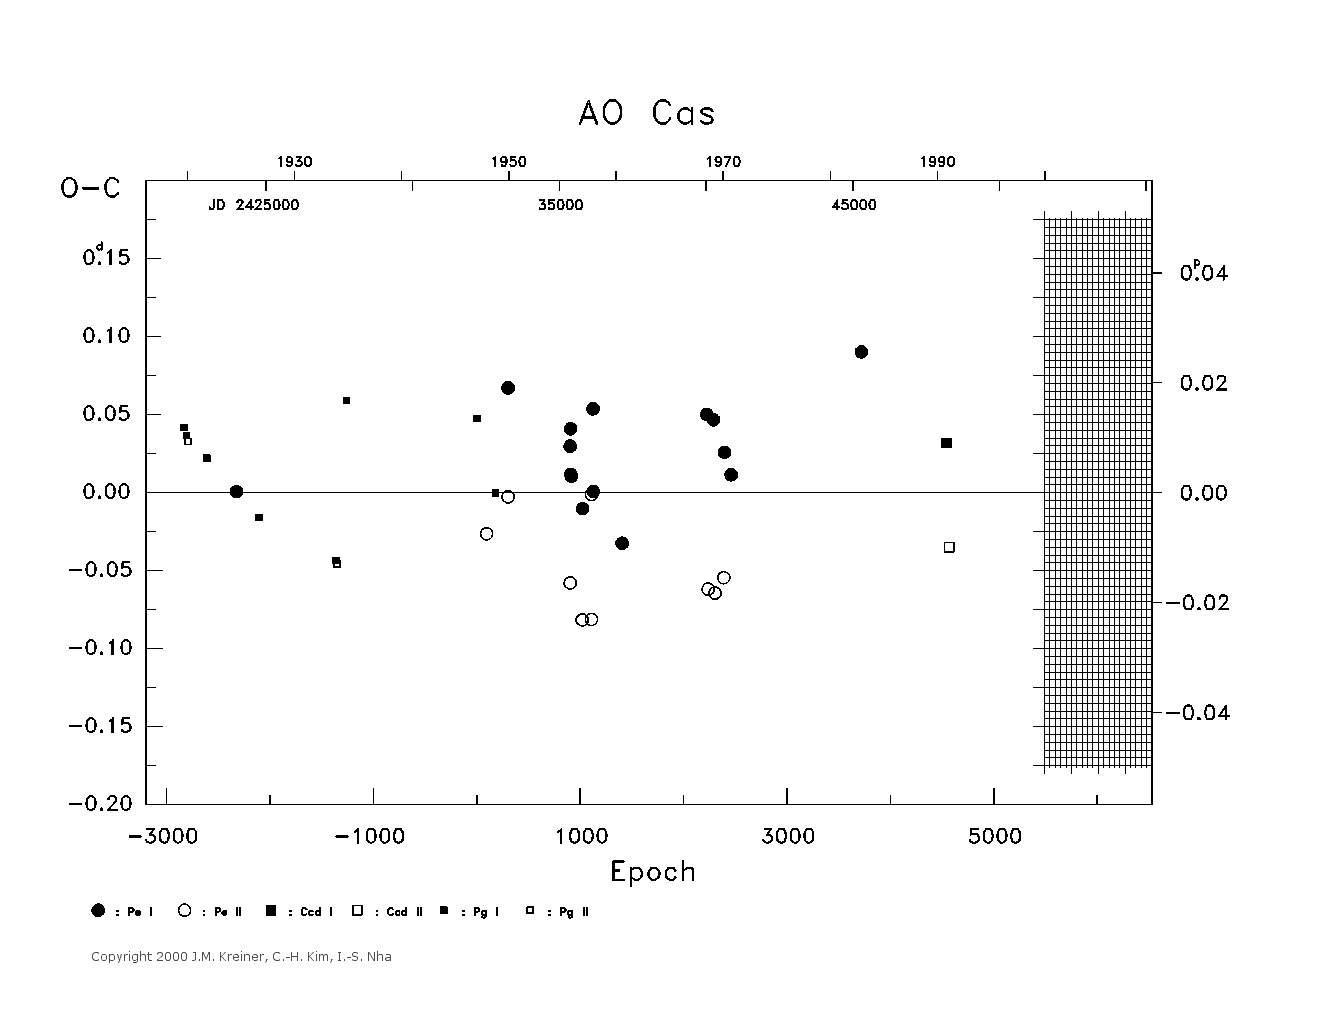 [IMAGE: large AO CAS O-C diagram]